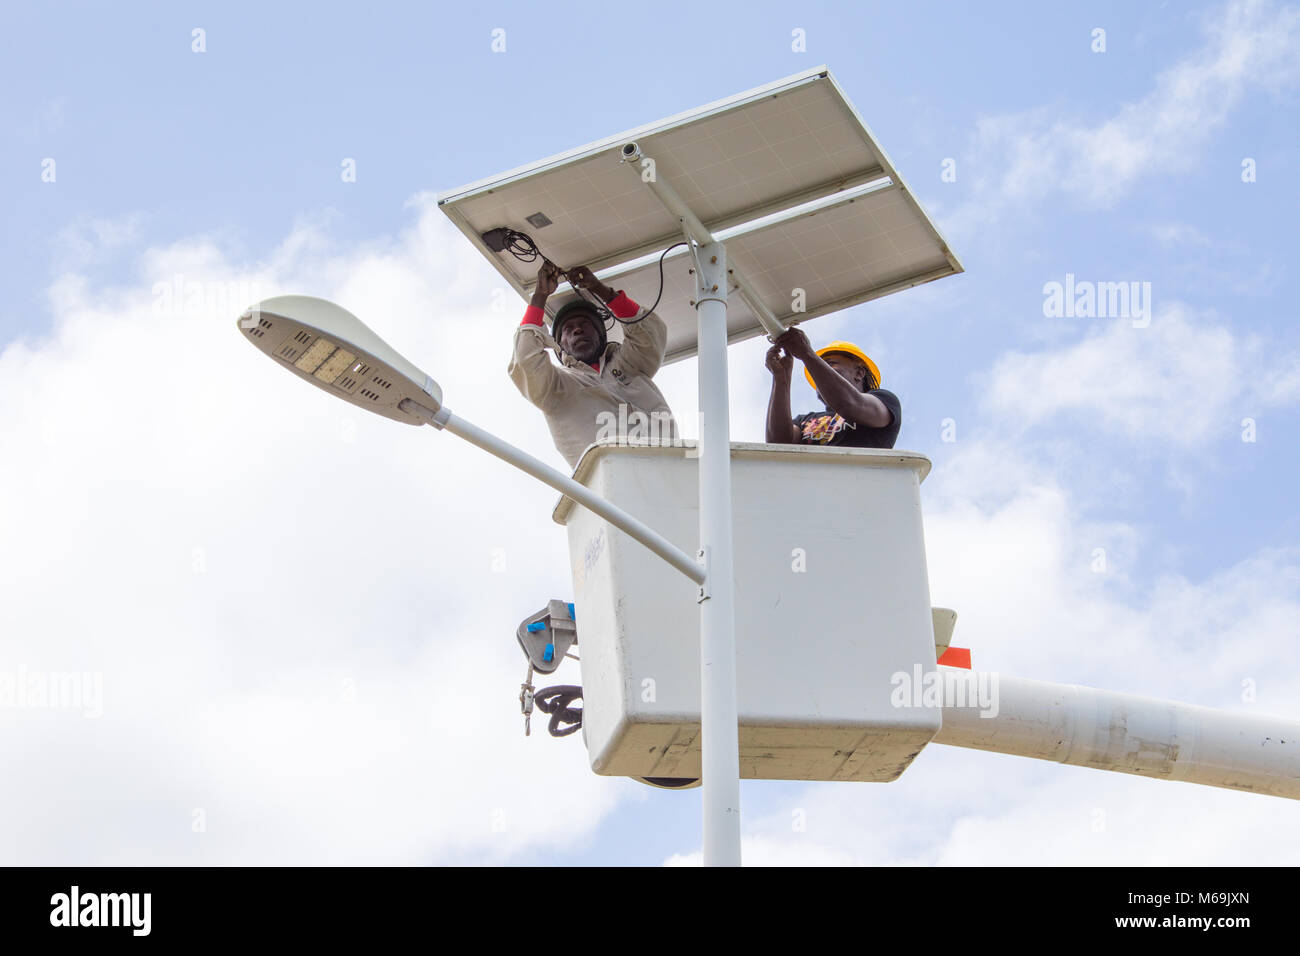 Solar street light installation in Antigua Stock Photo